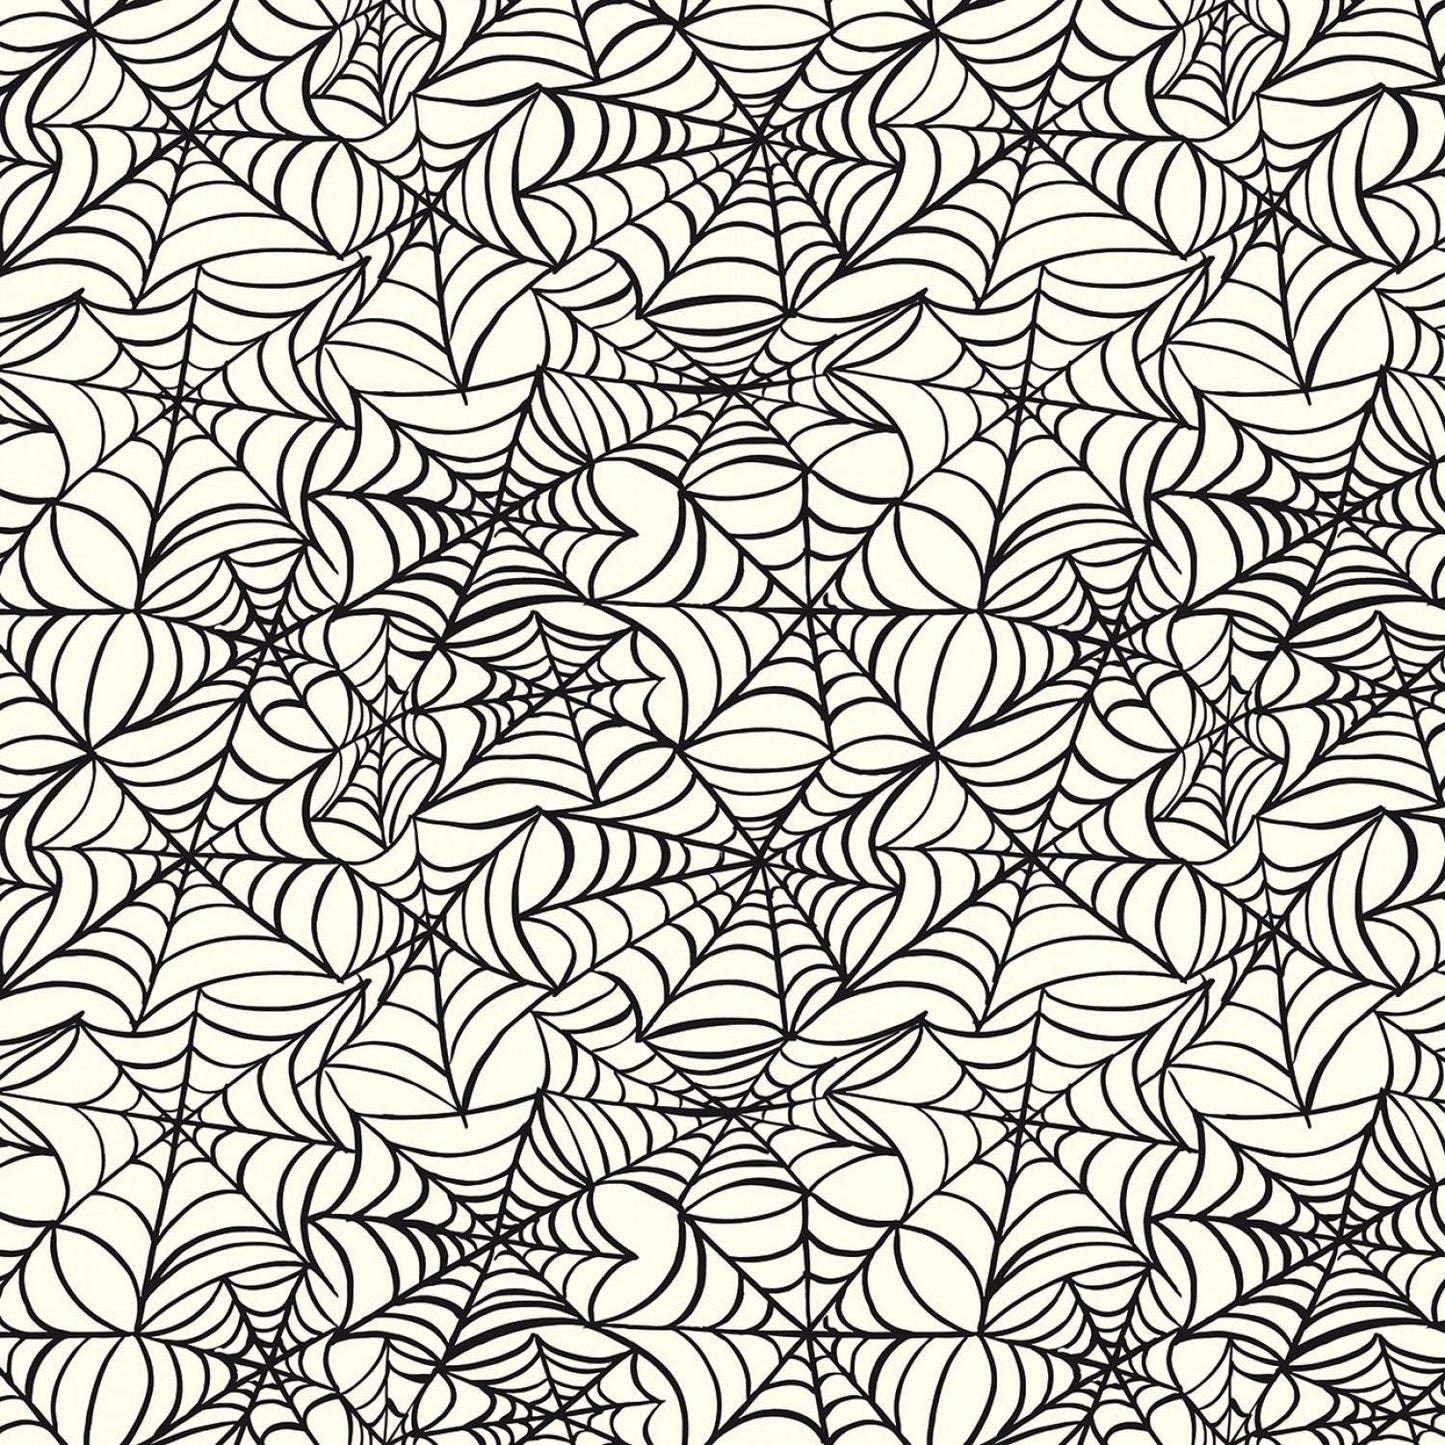 Hocus Pocus by Echo Park Spiderwebs Cream C9493-CREAM Cotton Woven Fabric